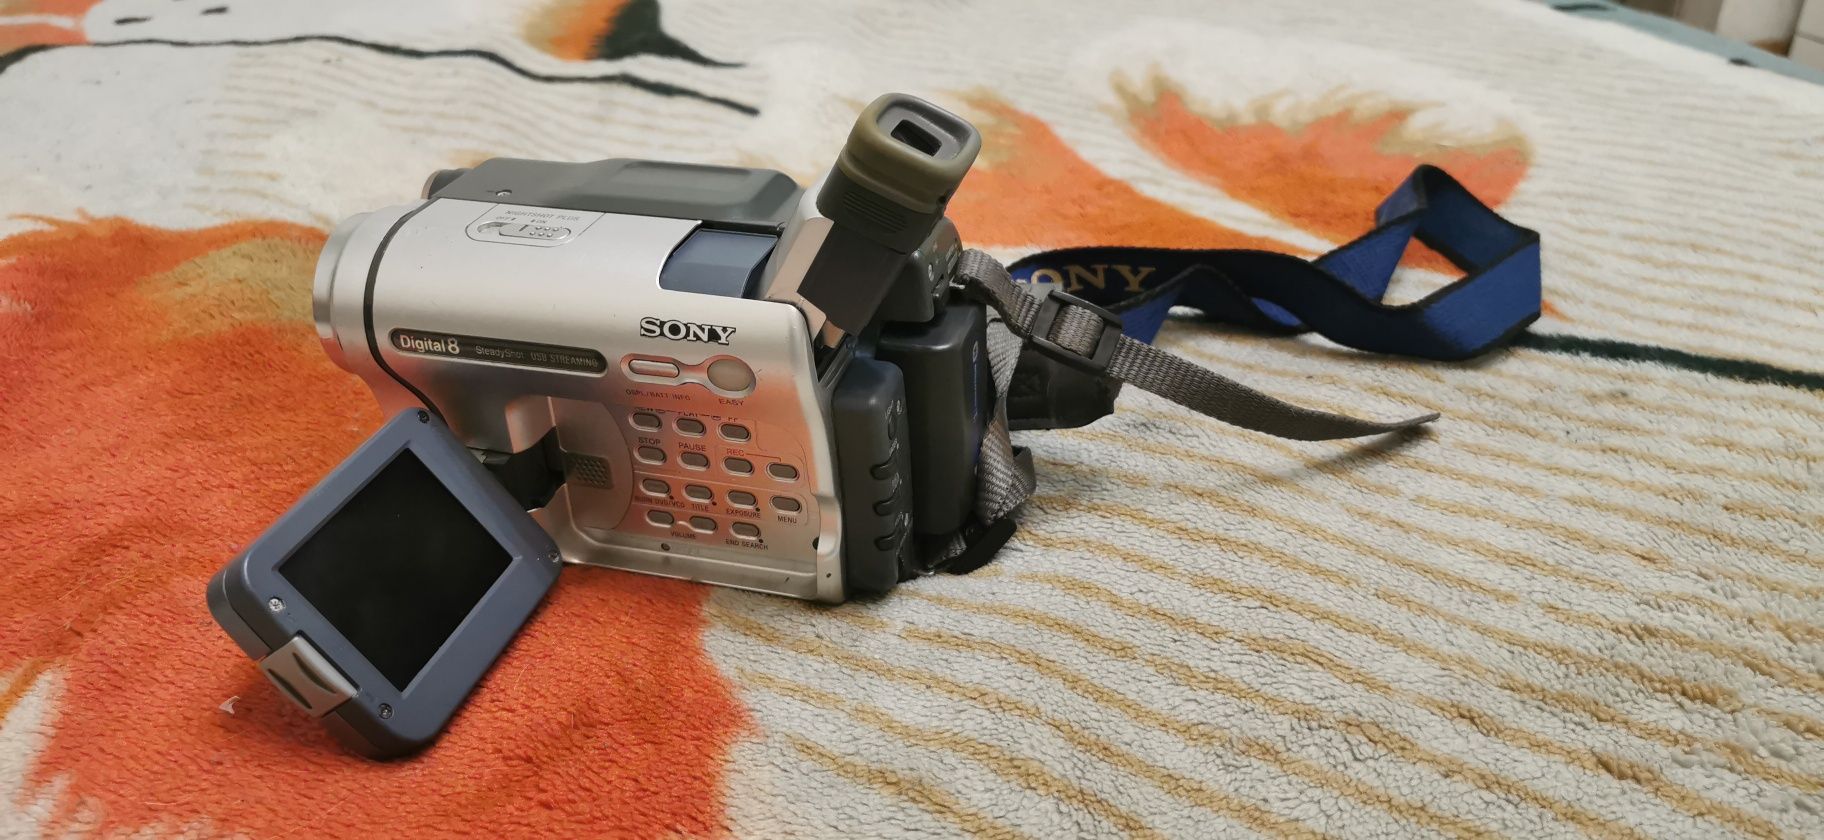 Відеокамера Sony DCR-TRV265E з сумкою